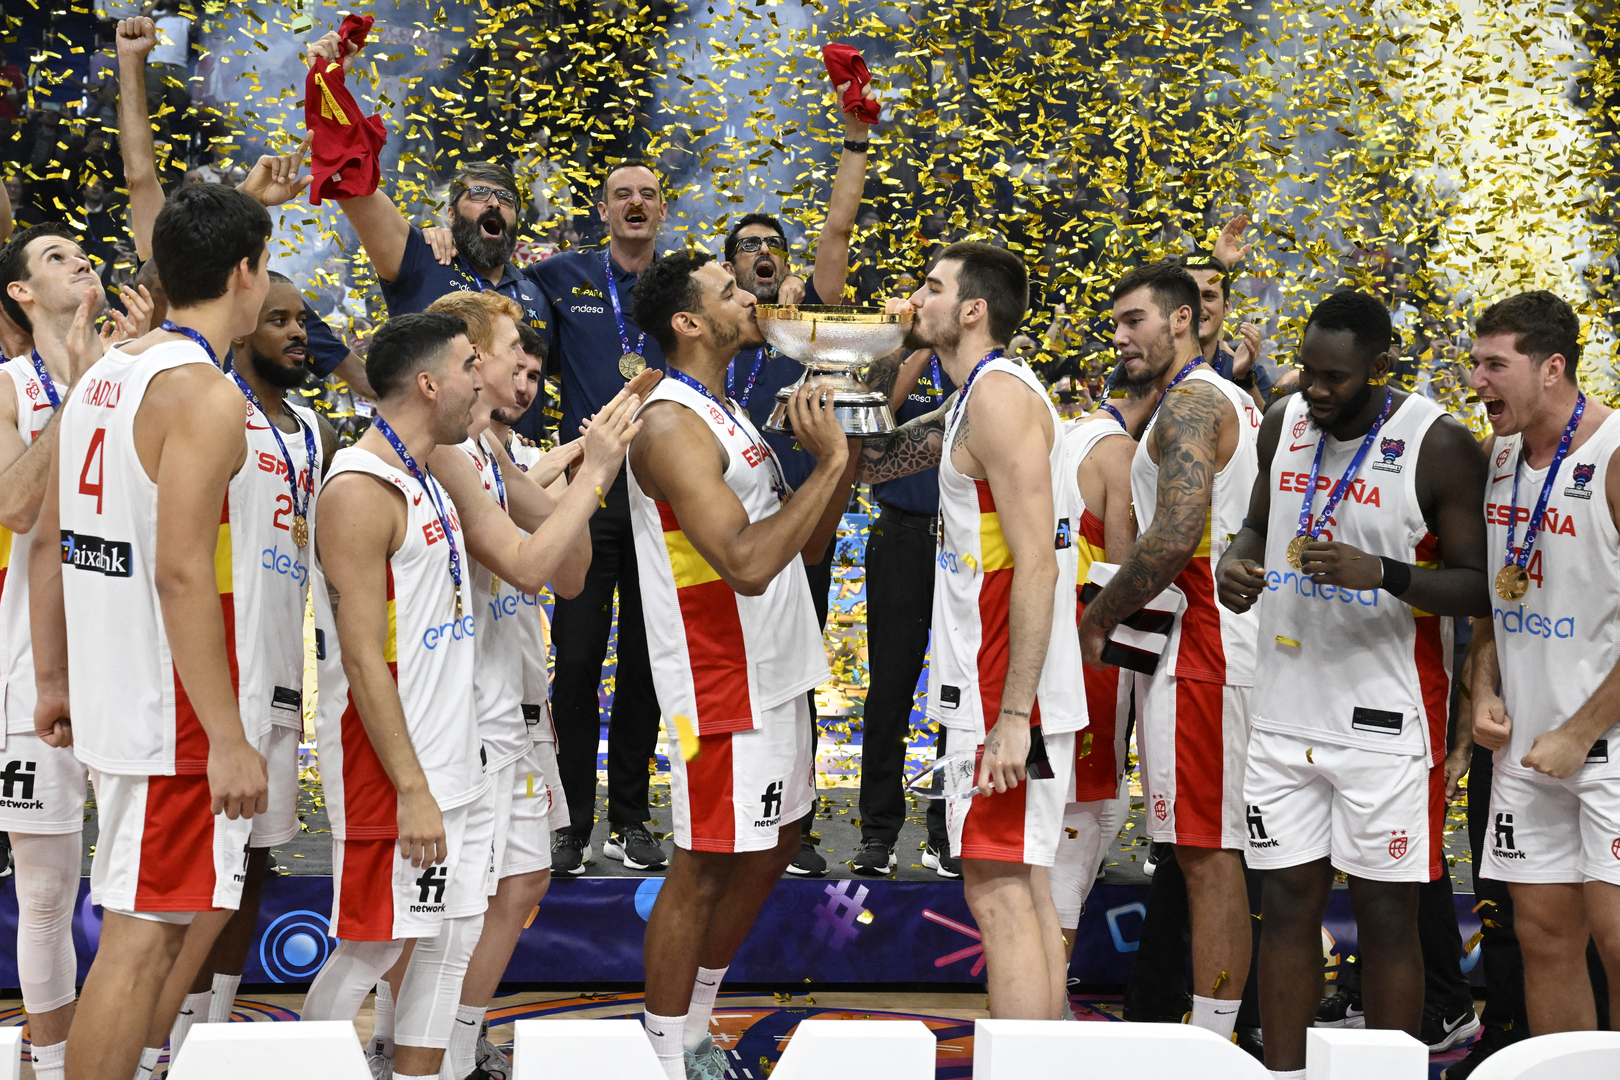 إسبانيا تحقق لقب كأس أوروبا لكرة السلة للمرة الرابعة على حساب فرنسا